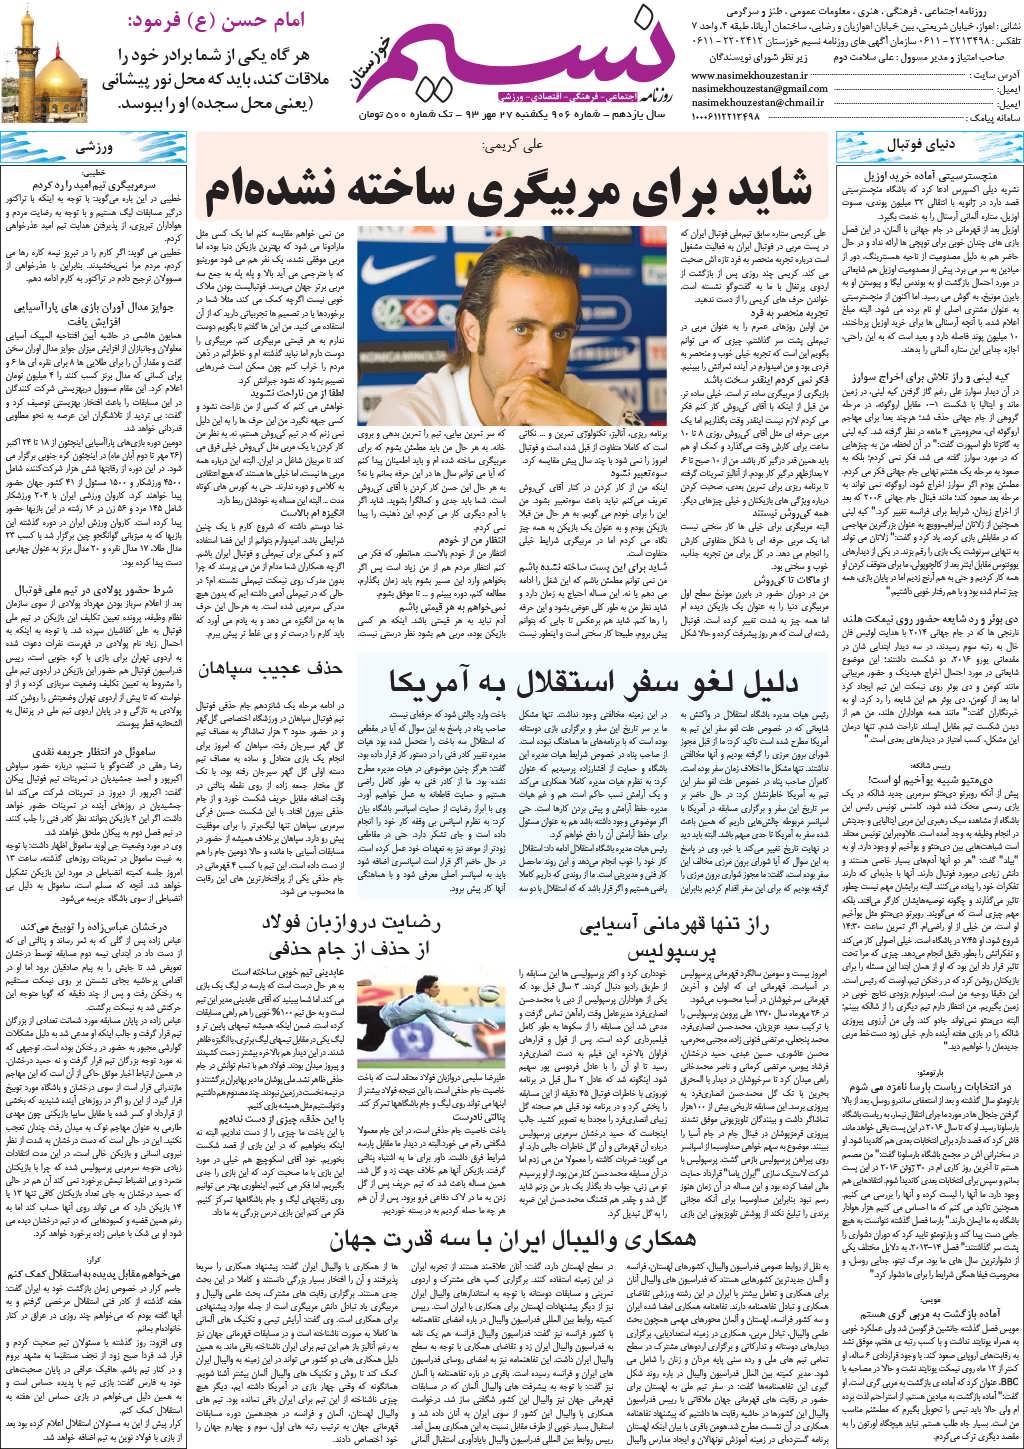 صفحه گوناگون روزنامه نسیم خوزستان شماره ۸۱۶